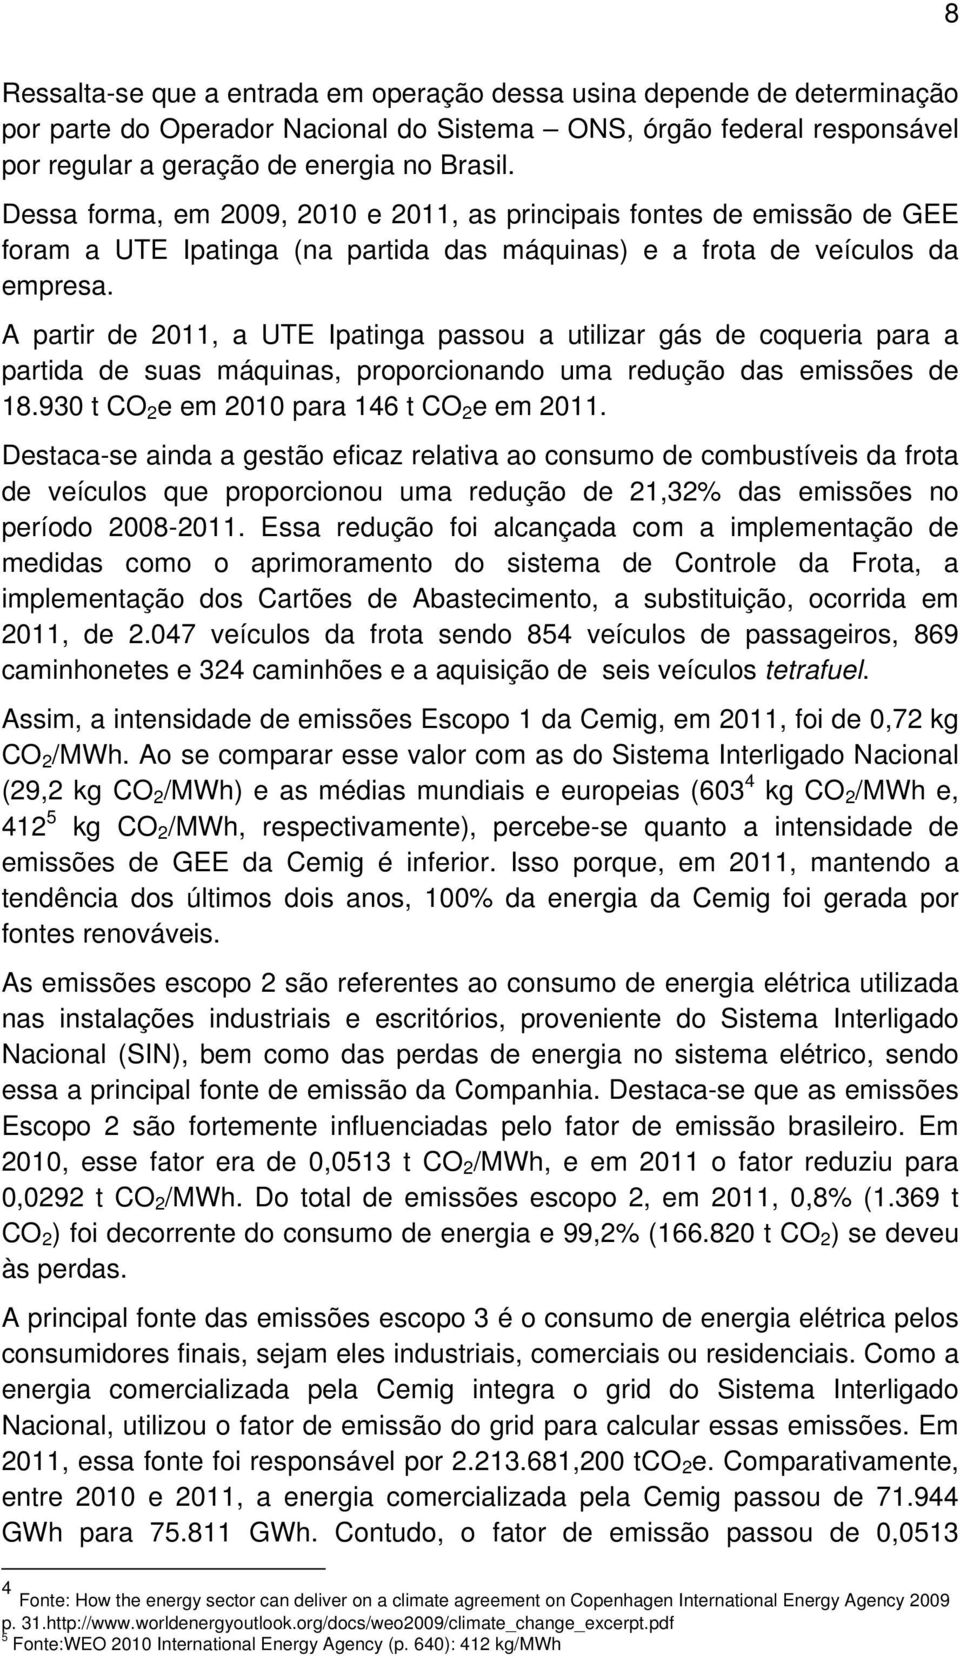 A partir de 2011, a UTE Ipatinga passou a utilizar gás de coqueria para a partida de suas máquinas, proporcionando uma redução das emissões de 18.930 t CO 2 e em 2010 para 146 t CO 2 e em 2011.